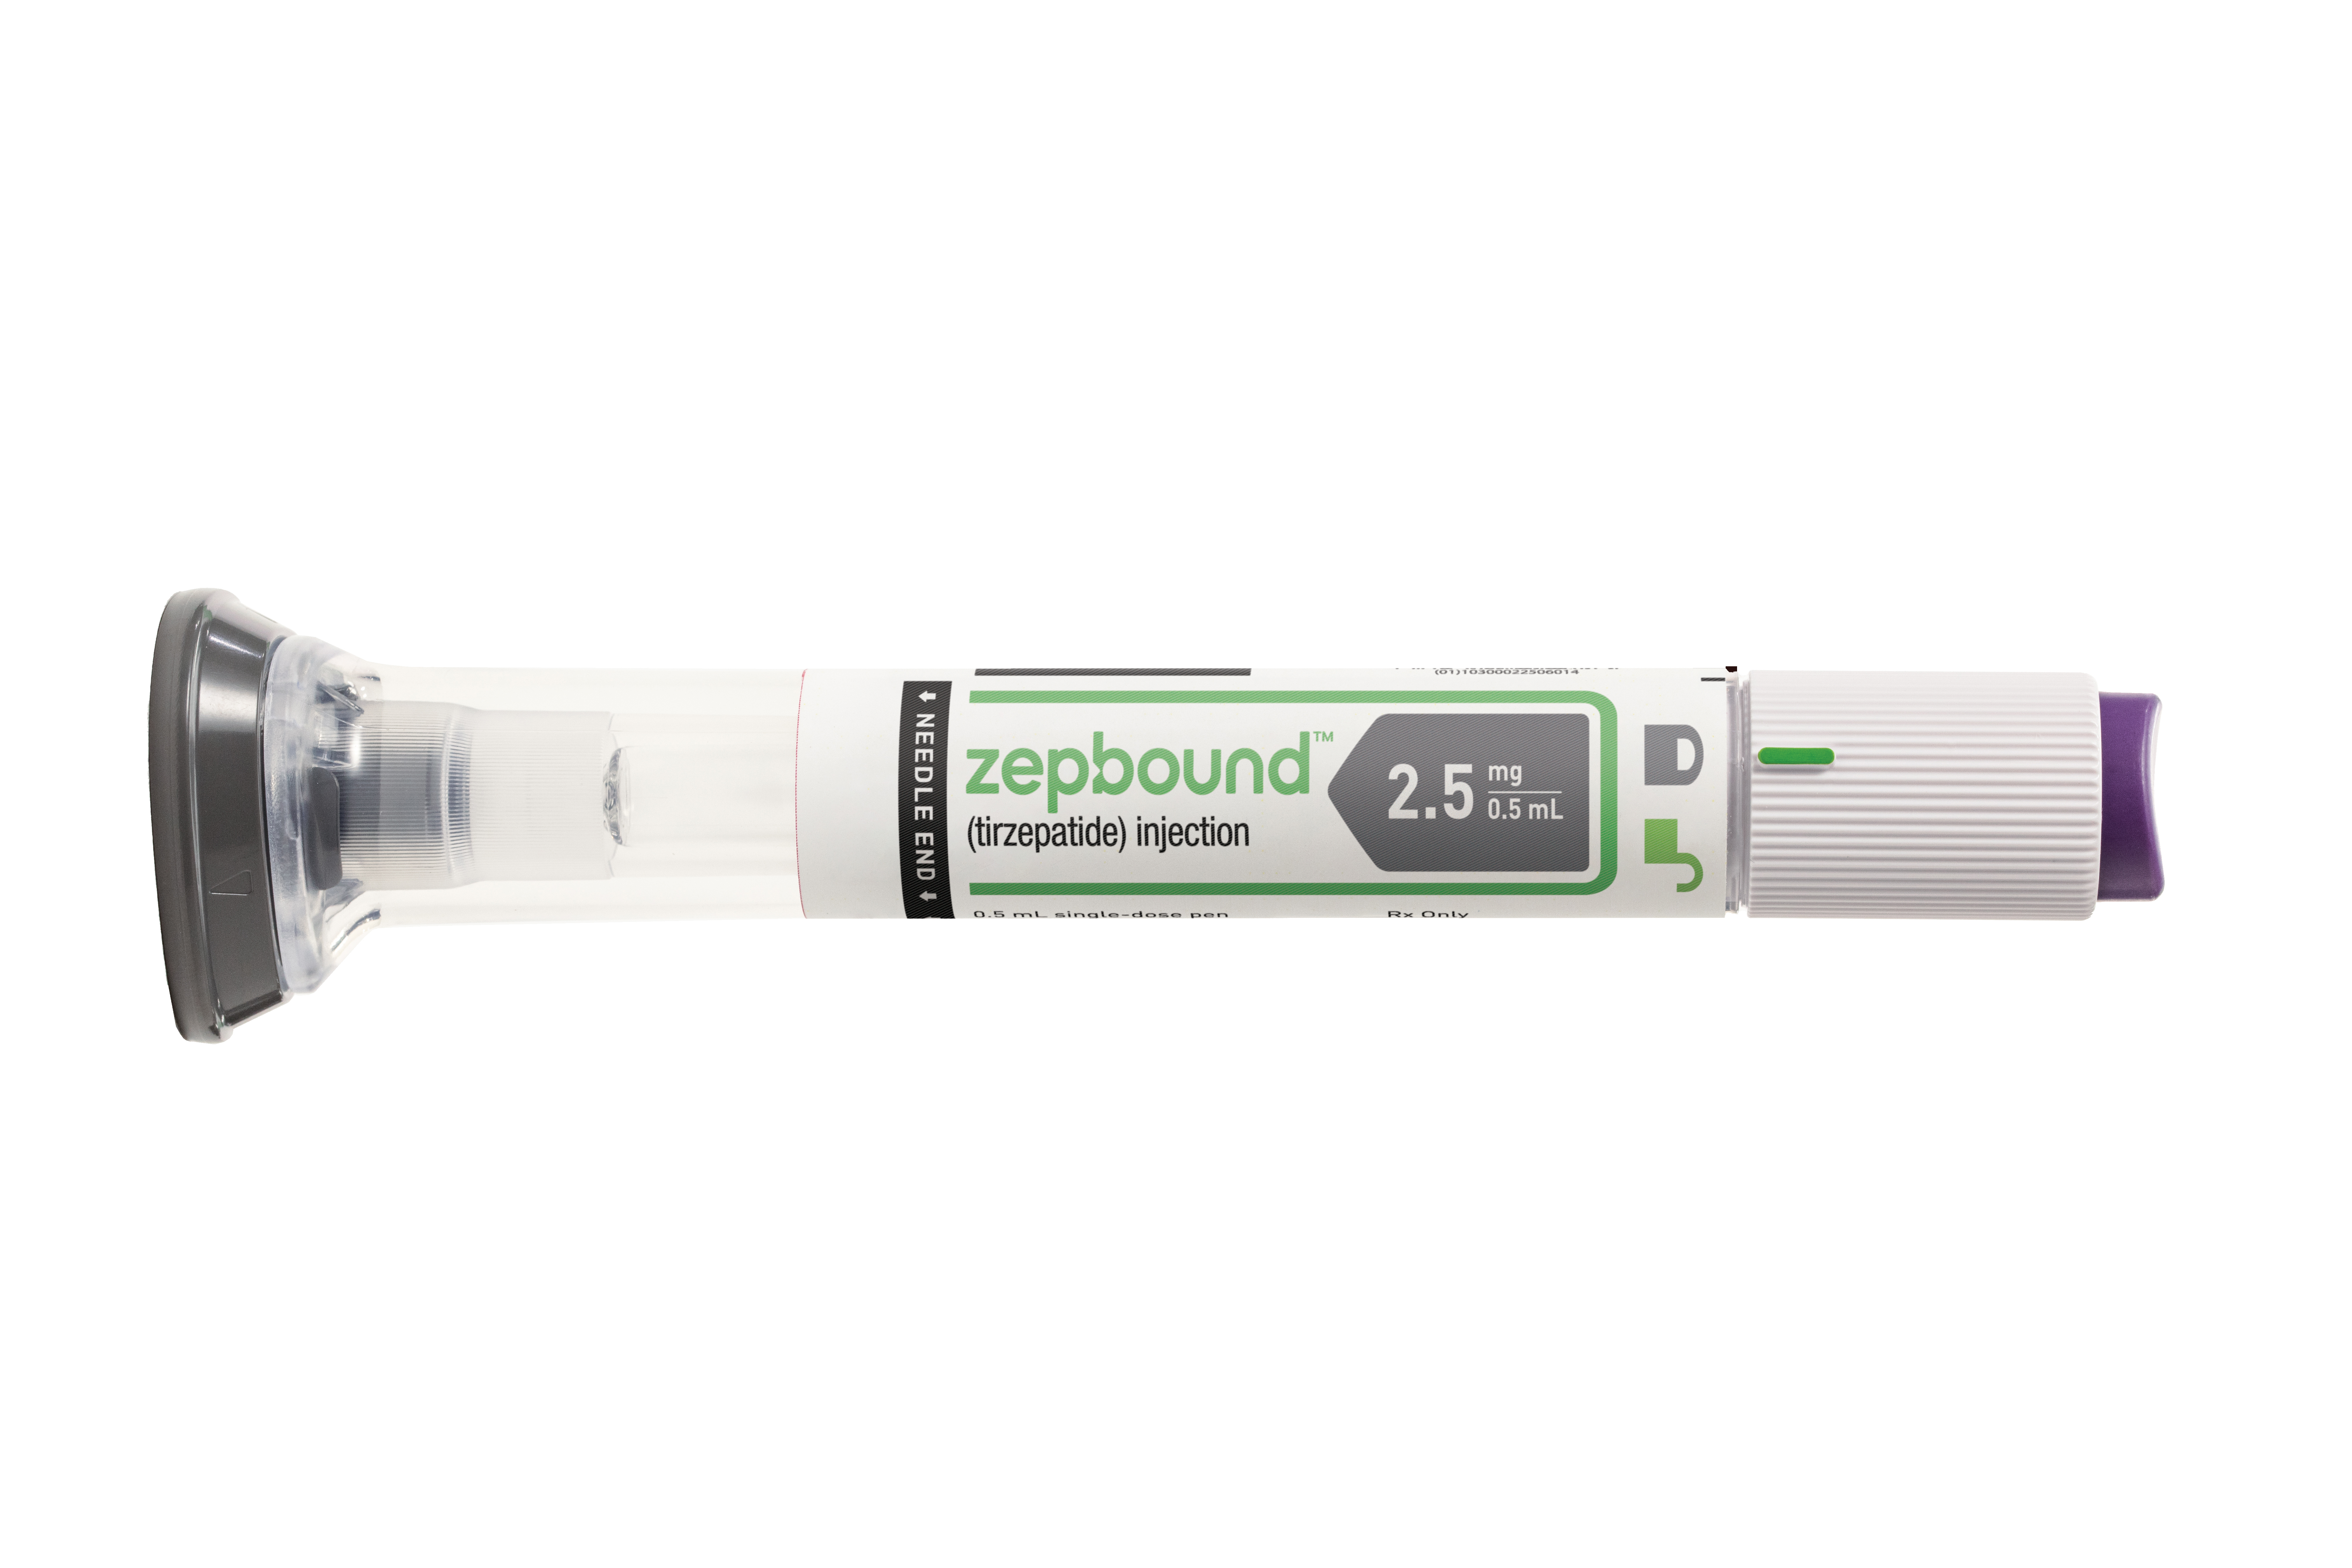 El fármaco para bajar de peso Zepbound, rival de Ozempic, aprobado en EE. UU. por la FDA